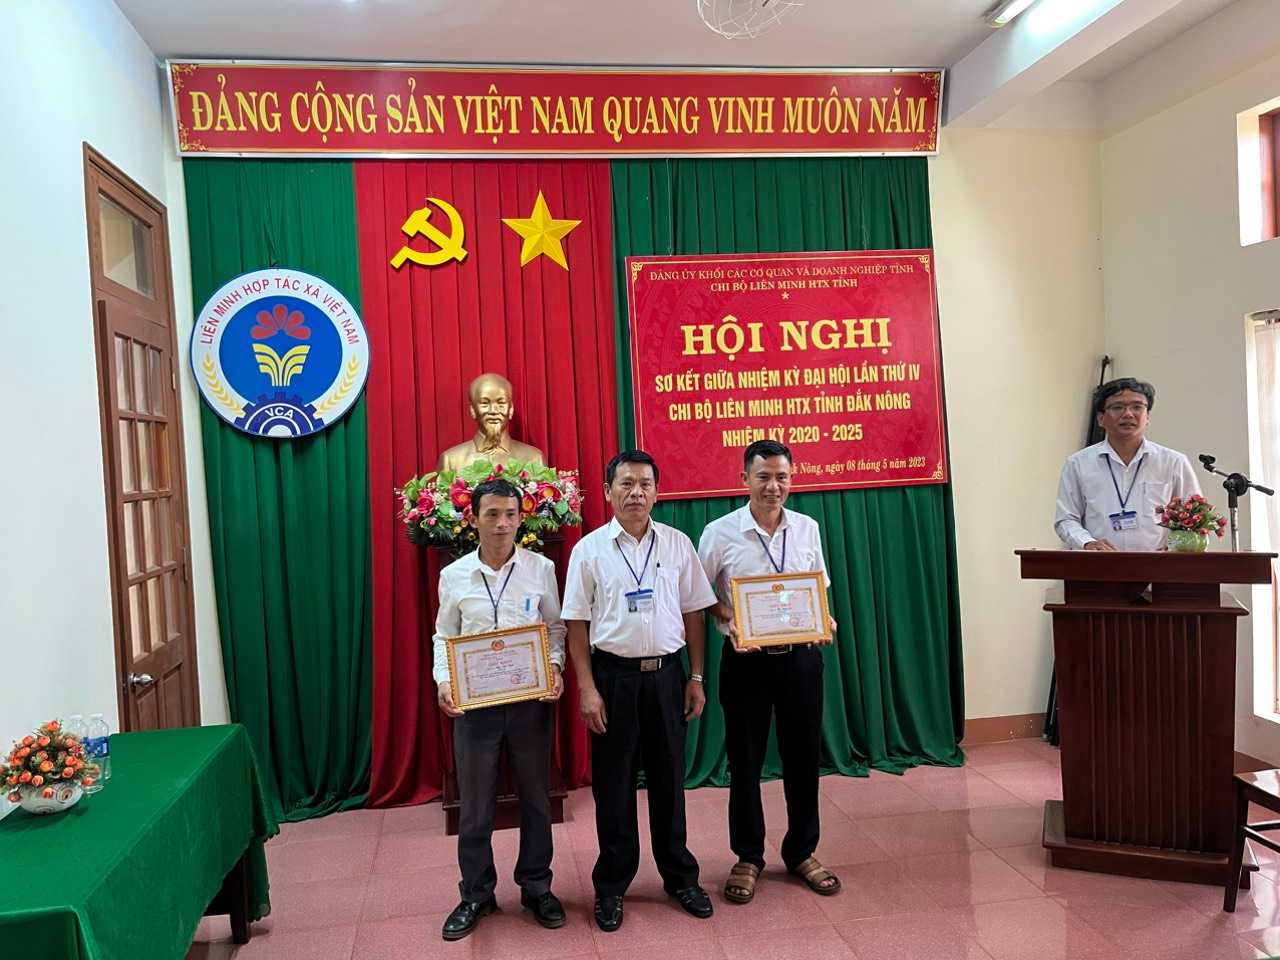 Hội nghị sơ kết giữa nhiệm kỳ Đại hội lần thứ IV  Chi bộ Liên minh Hợp tác xã tỉnh Đắk Nông